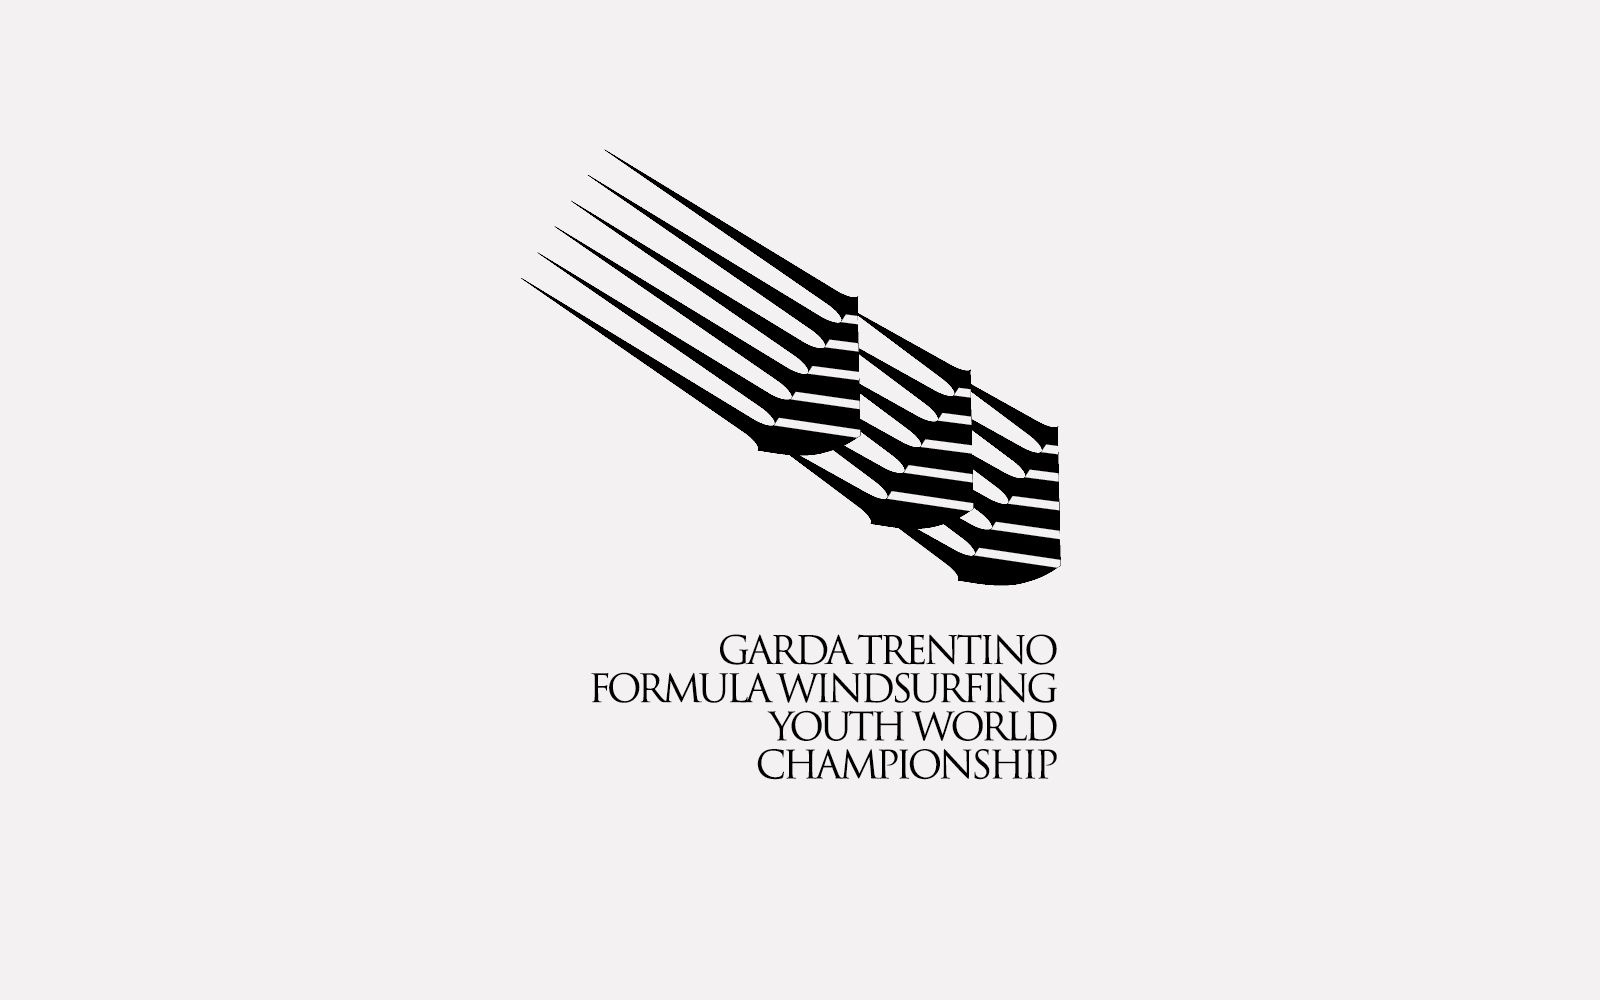 progetto per marchio competizione sportiva garda trentino youth world championship, creato dallo studio grafico diade arco trento